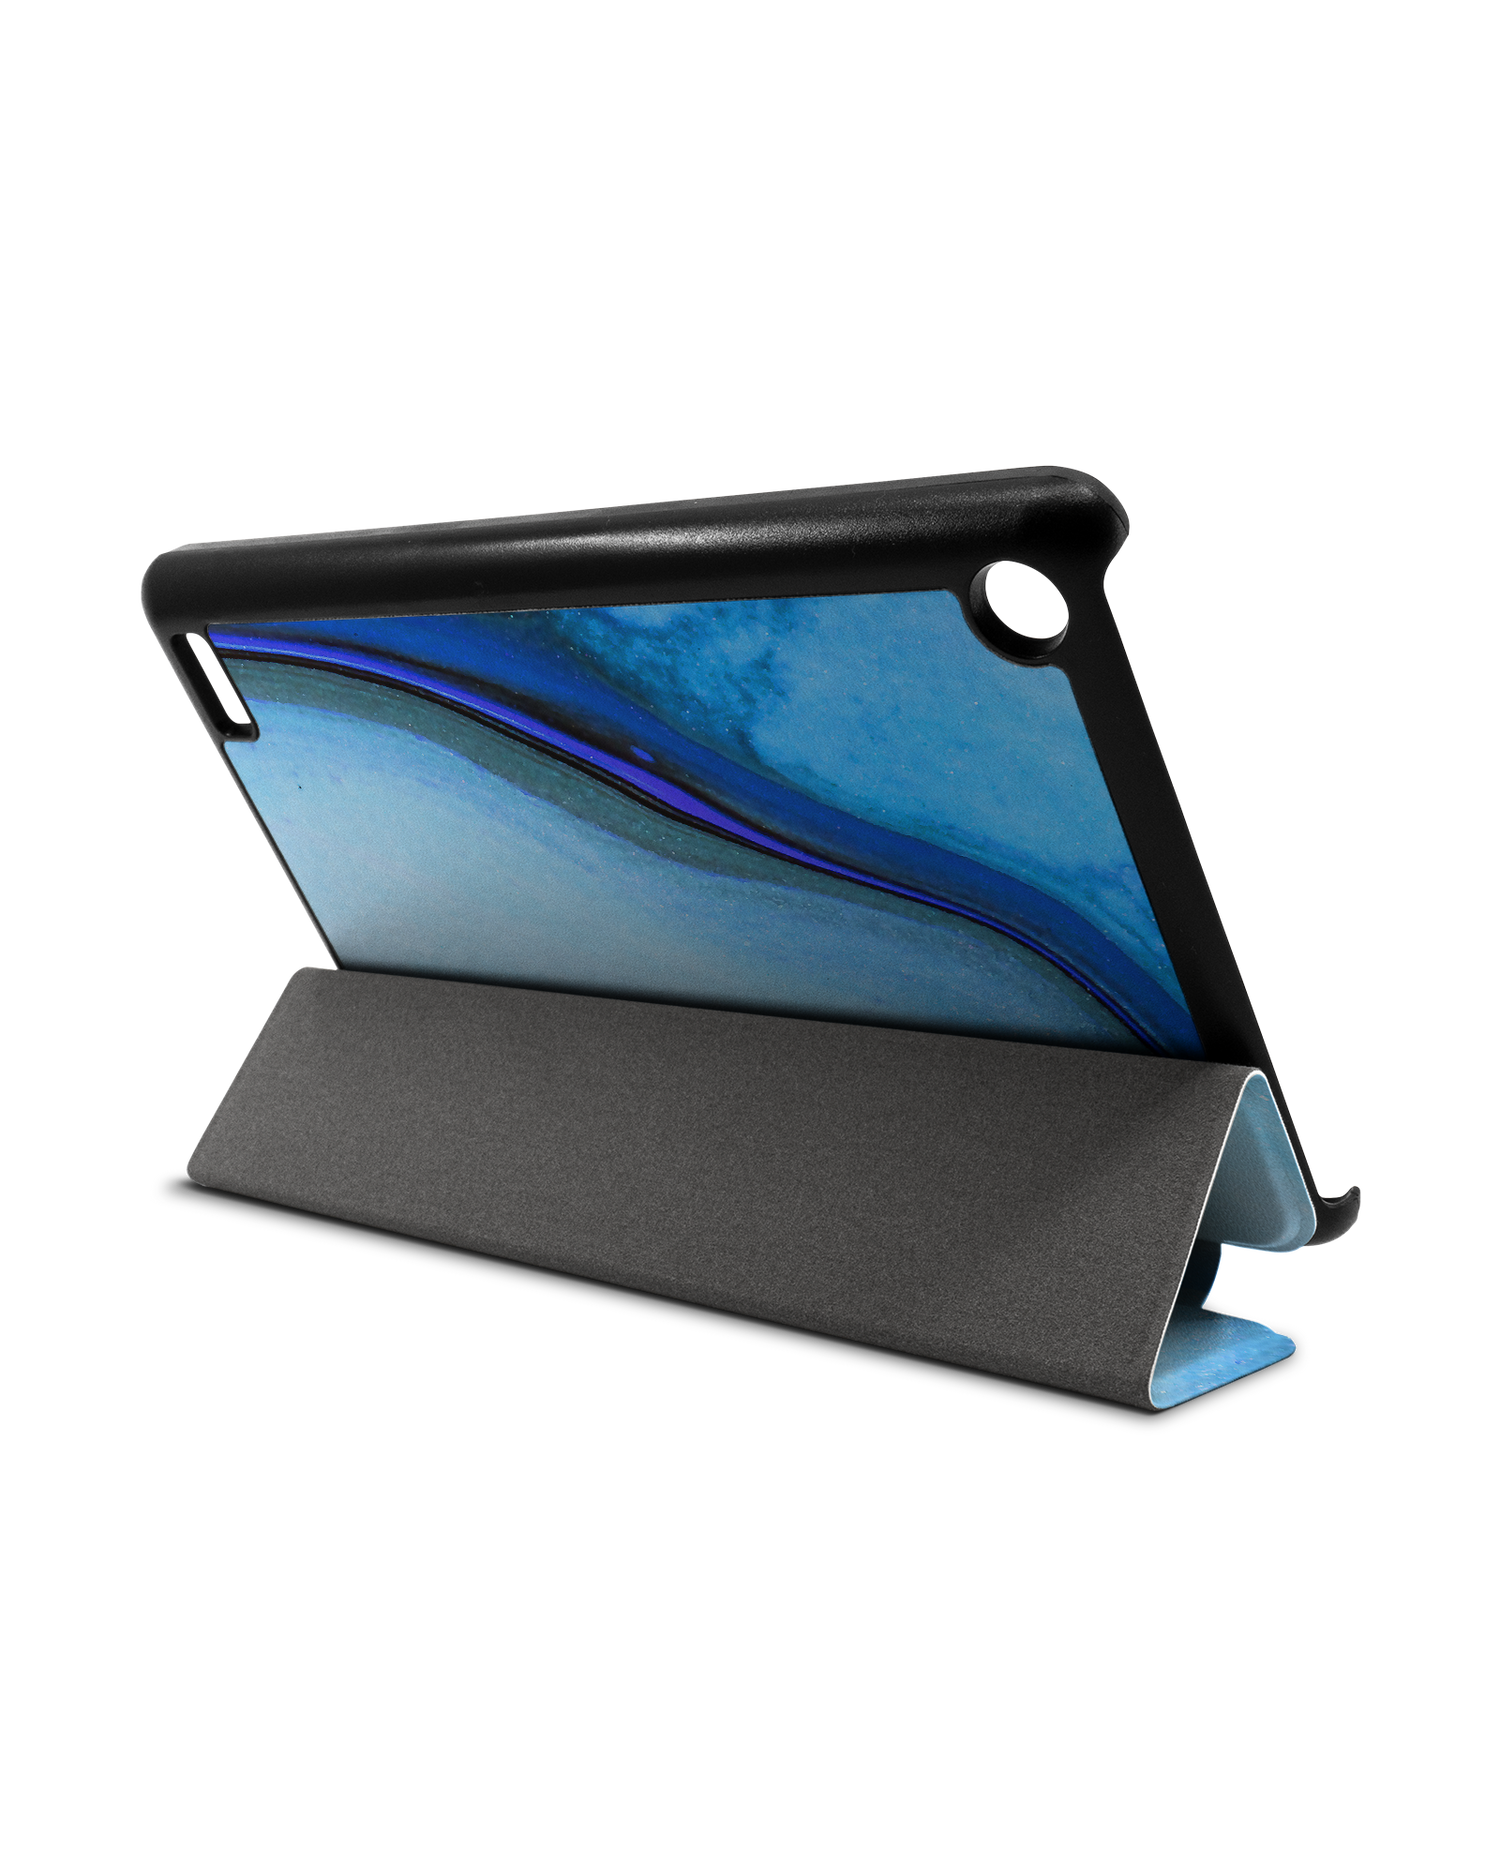 Cool Blues Tablet Smart Case für Amazon Fire 7: Aufgestellt im Querformat